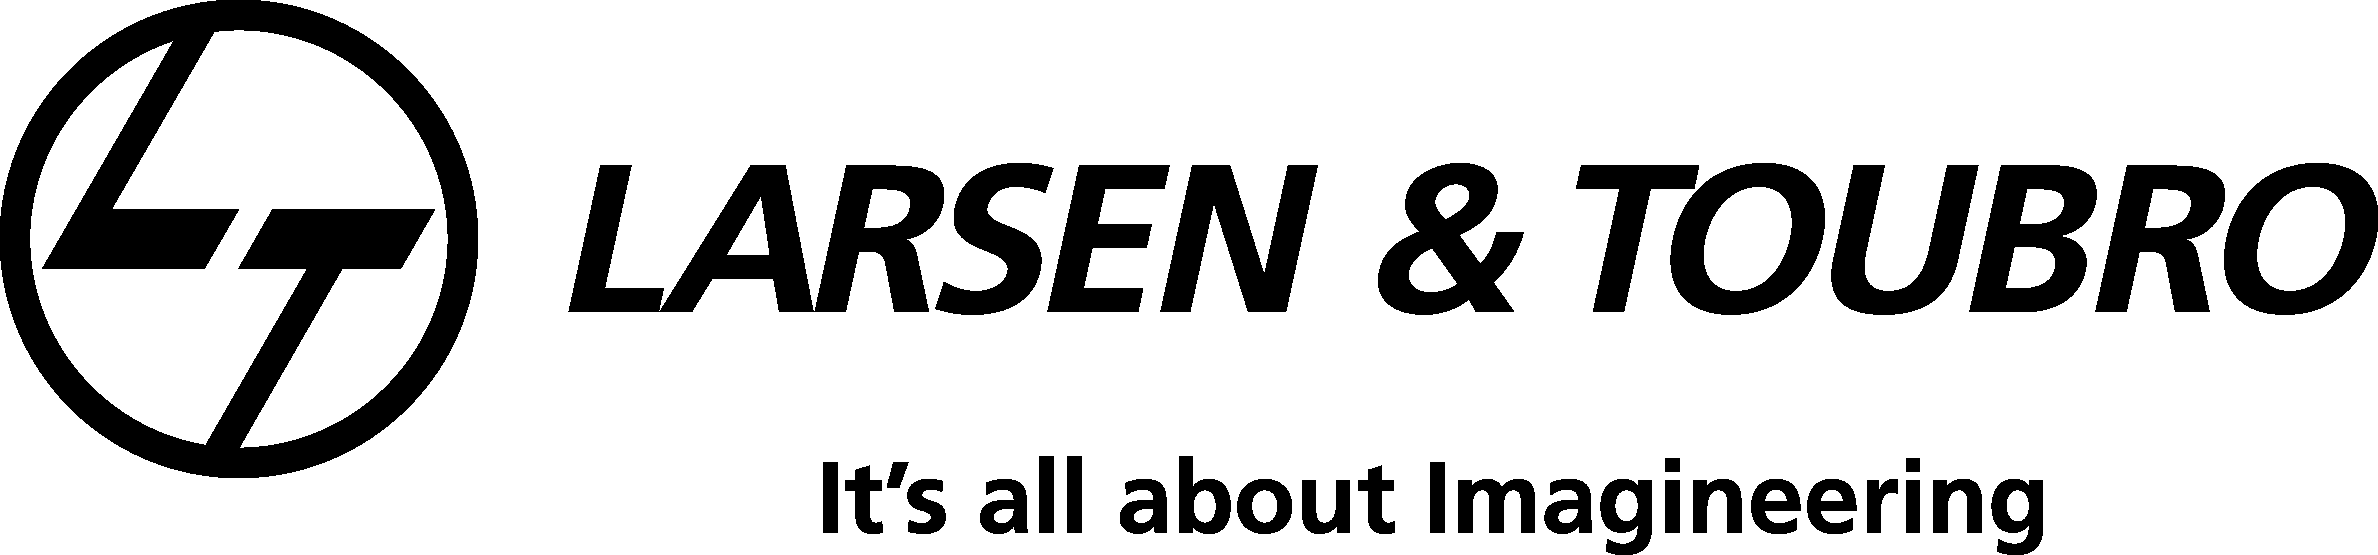 Larsen & Toubro Logo png